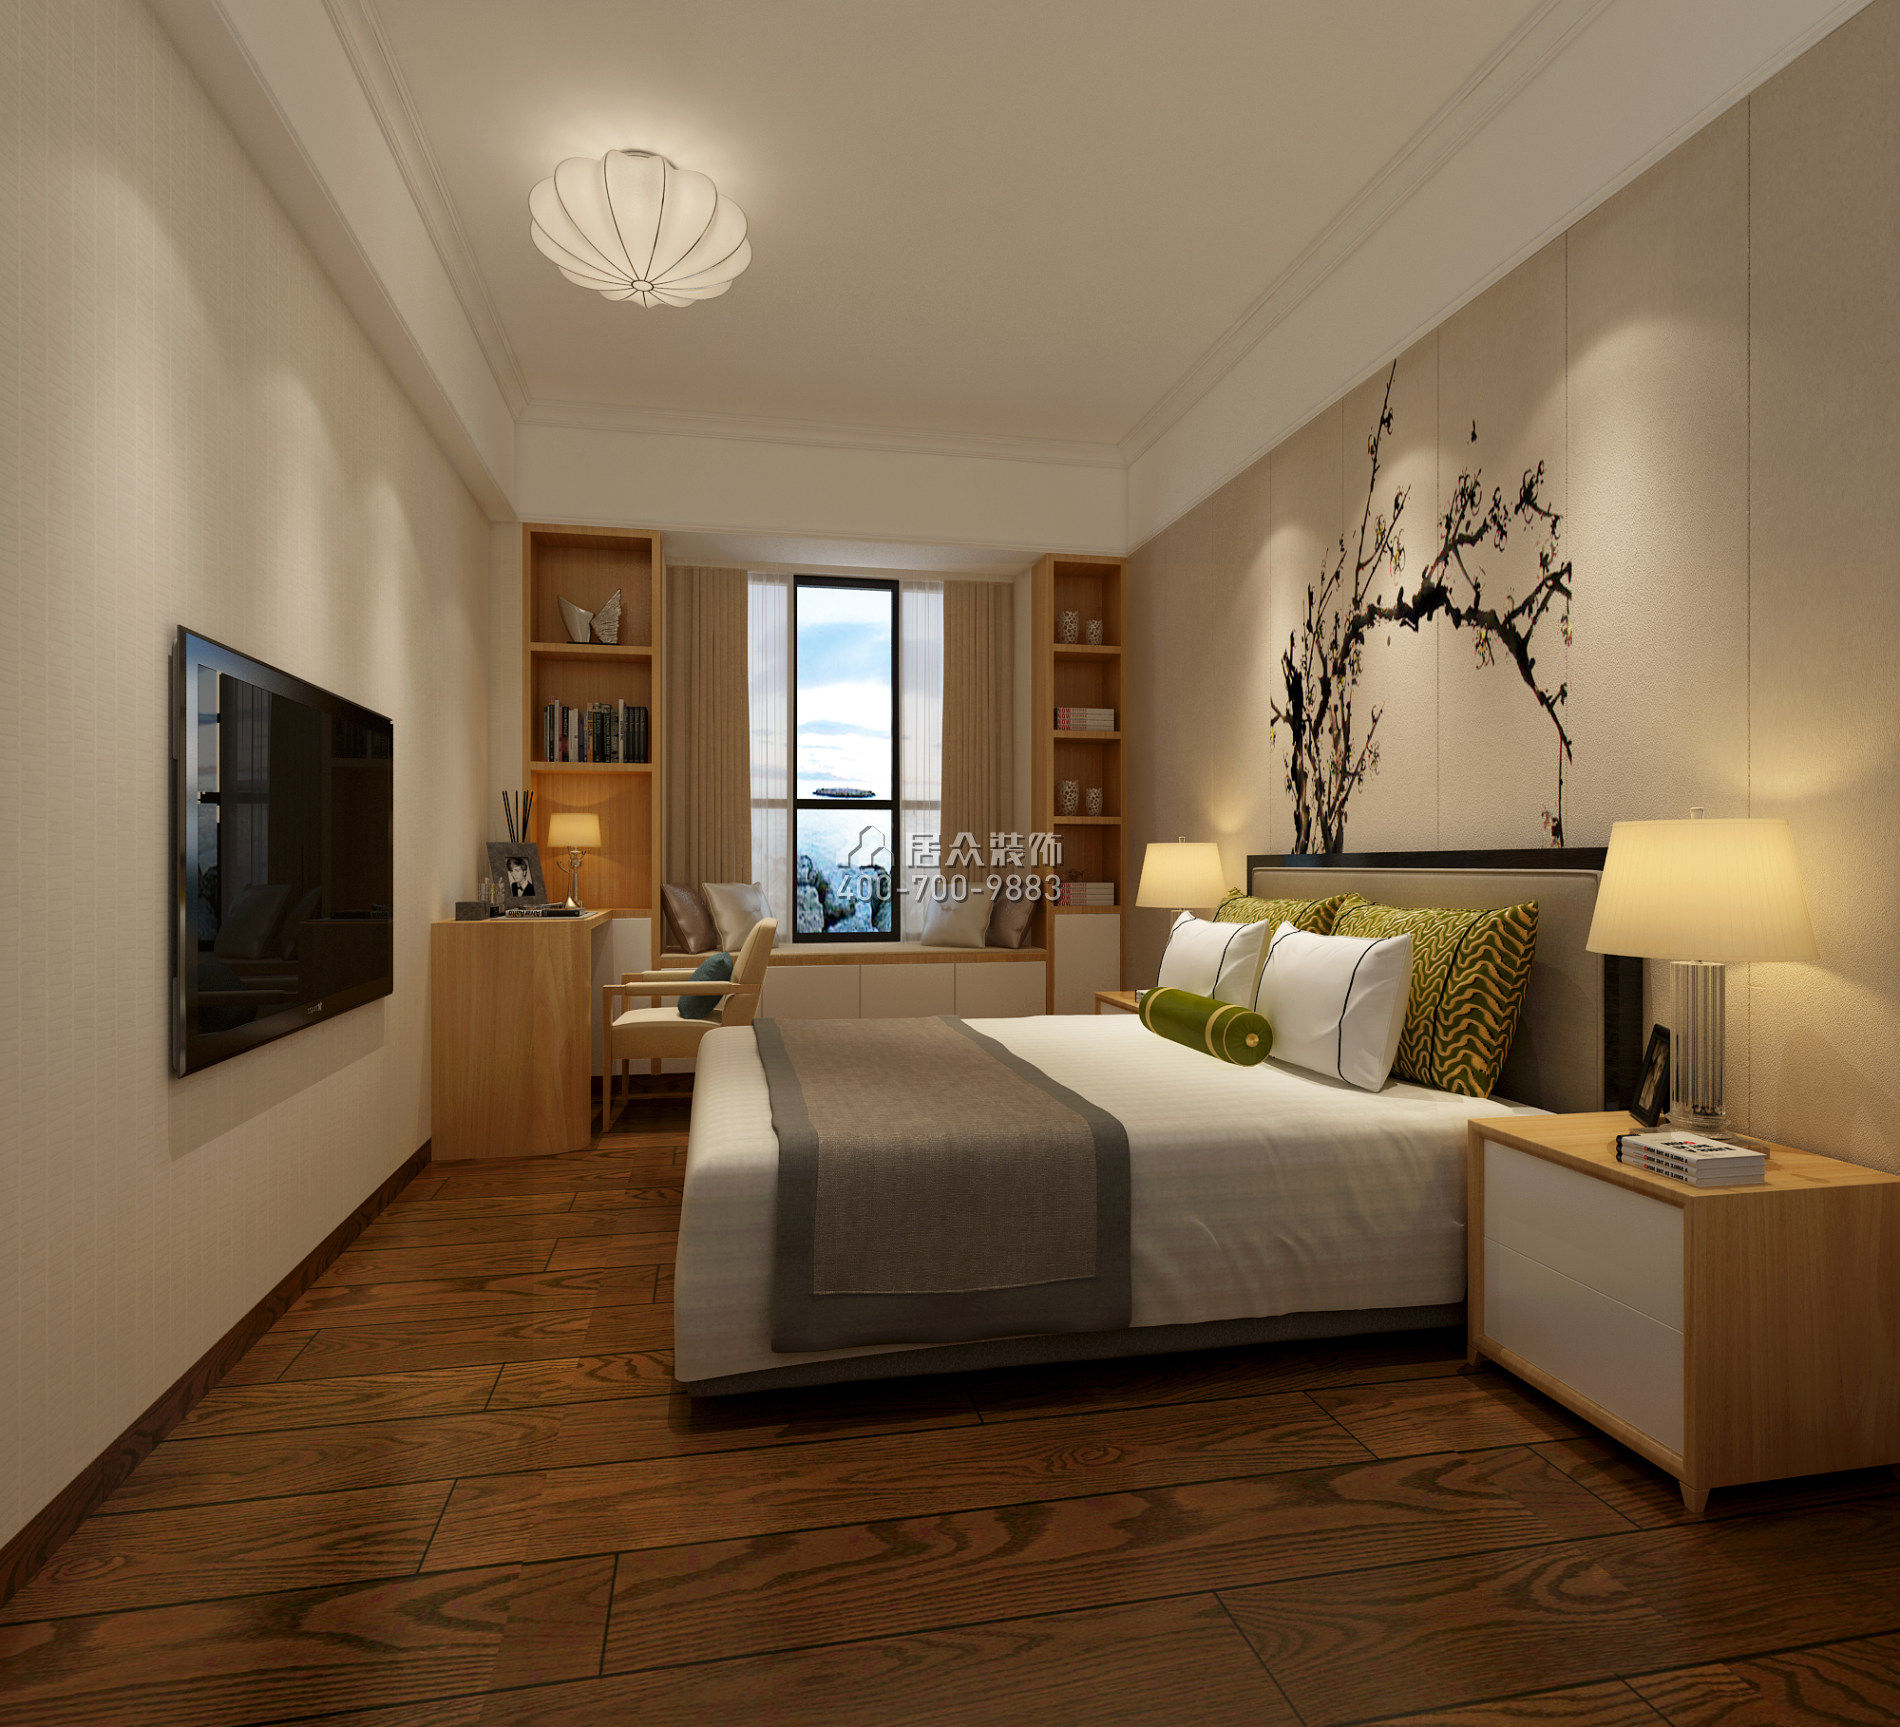 中伦东海岸121平方米现代简约风格平层户型卧室装修效果图